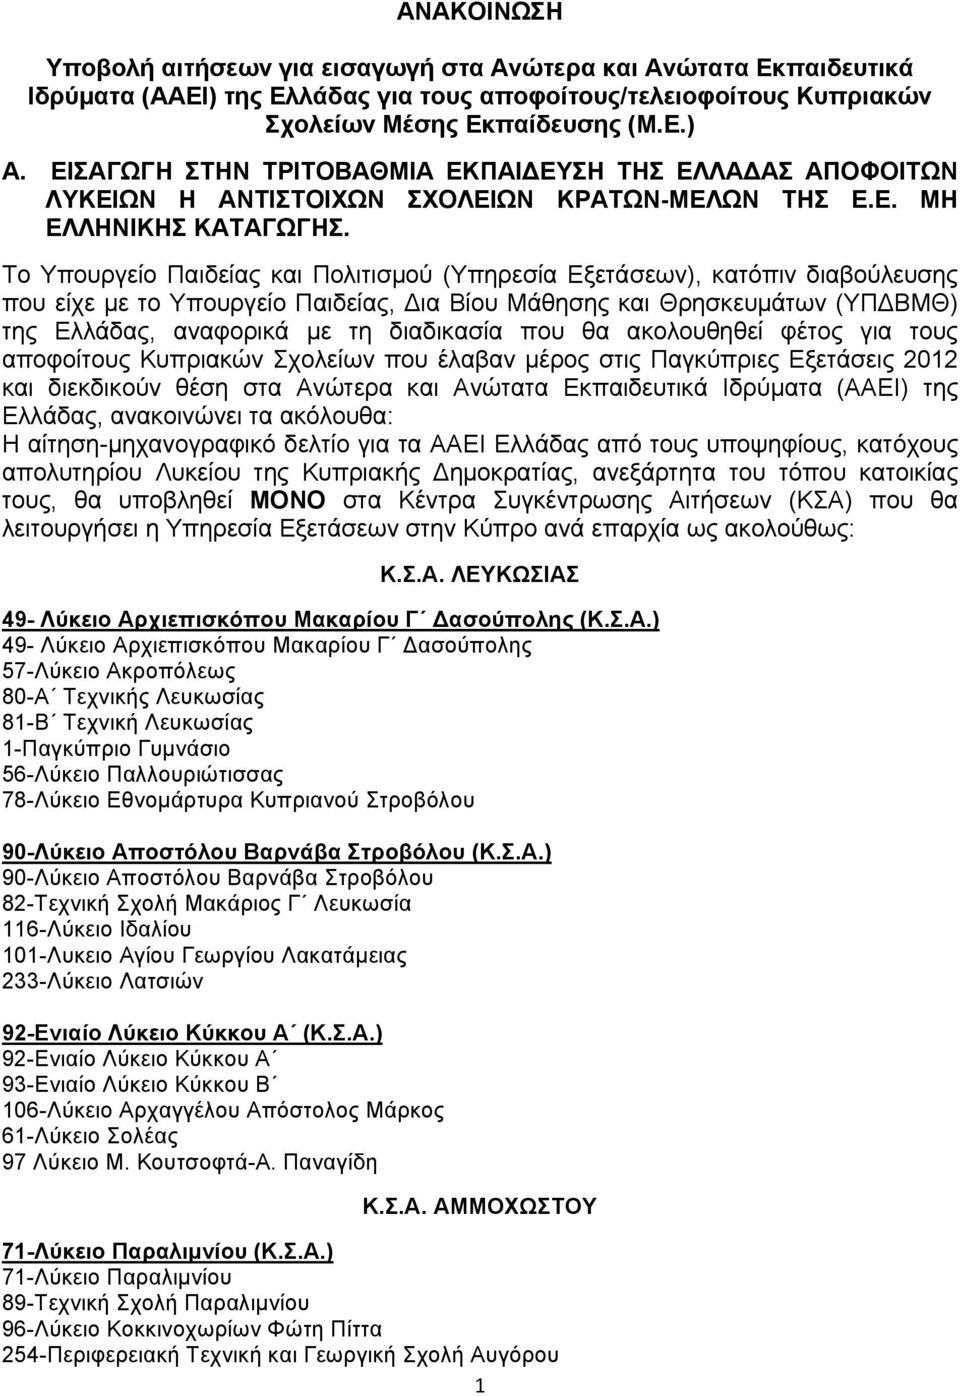 Το Υπουργείο Παιδείας και Πολιτισμού (Υπηρεσία Εξετάσεων), κατόπιν διαβούλευσης που είχε με το Υπουργείο Παιδείας, ια Βίου Μάθησης και Θρησκευμάτων (ΥΠ ΒΜΘ) της Ελλάδας, αναφορικά με τη διαδικασία